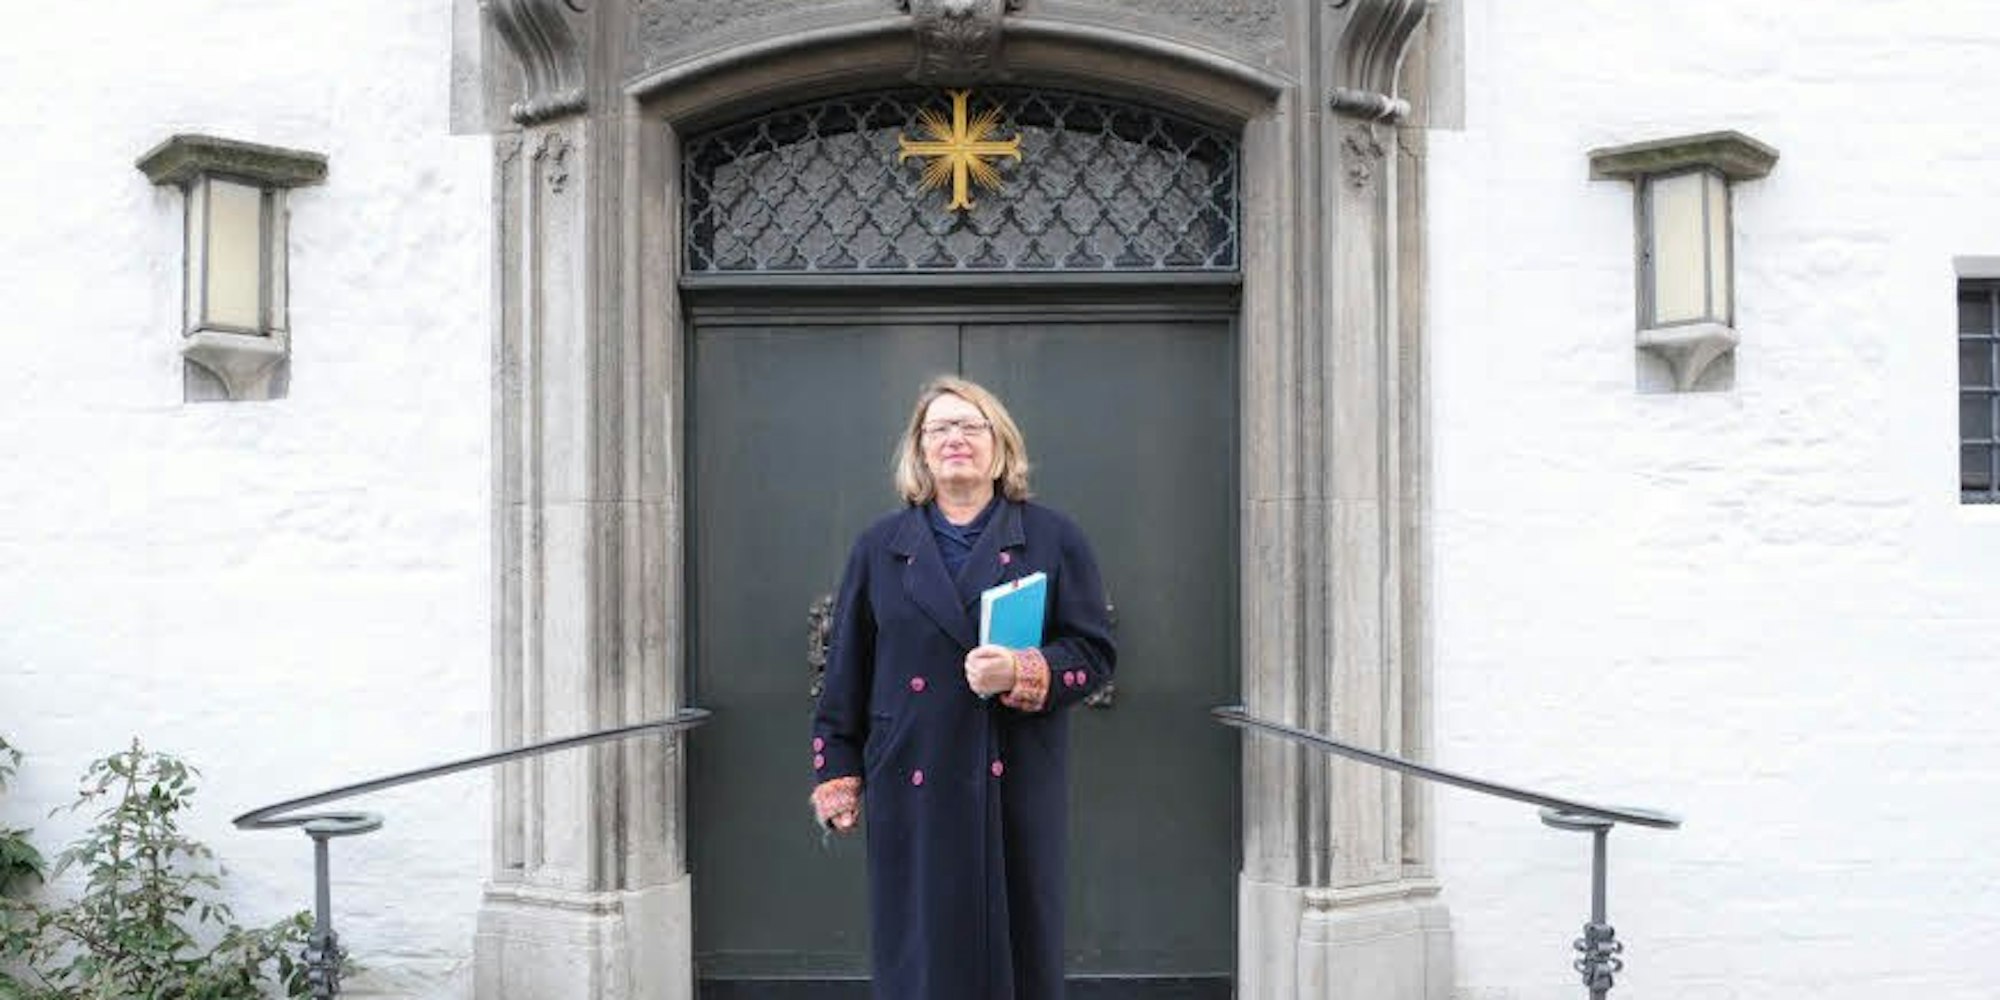 Historikerin Irene Franken vor der Kartäuserkirche: „Hier wollte Ina Gschlössl gerne predigen – und durfte nicht.“ Pfarrerinnen wurden erst 1975 zugelassen, im Jahr von Gschlössls Verrentung.